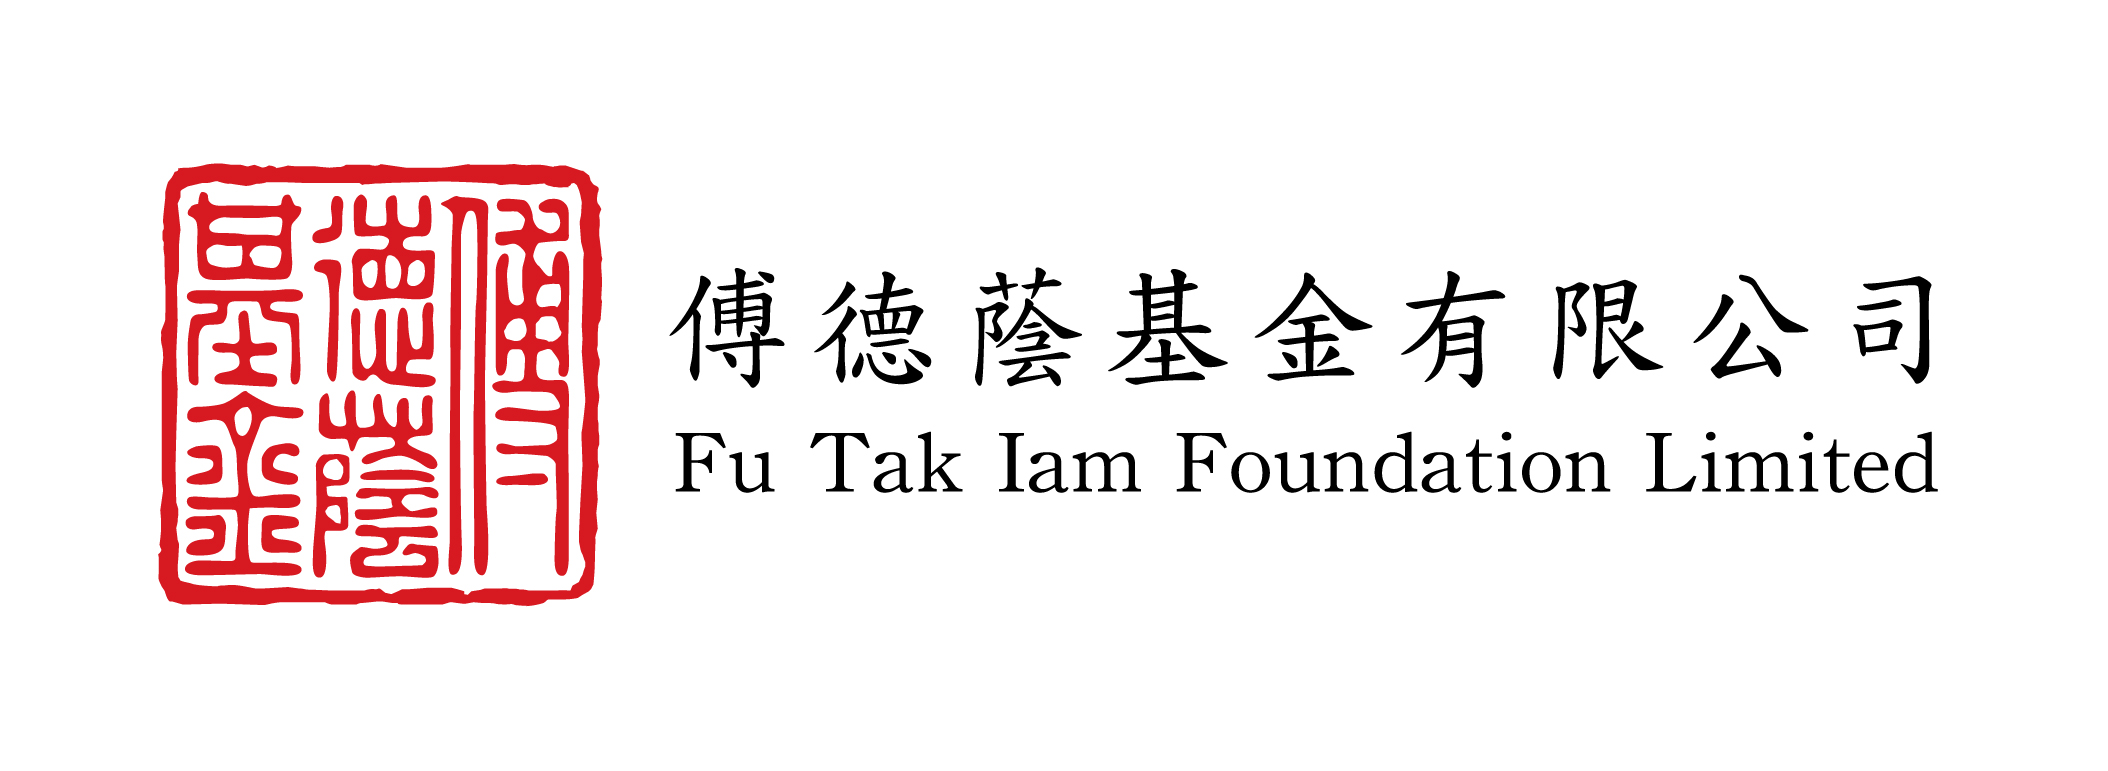 Fu Tak Iam Foundation Limited